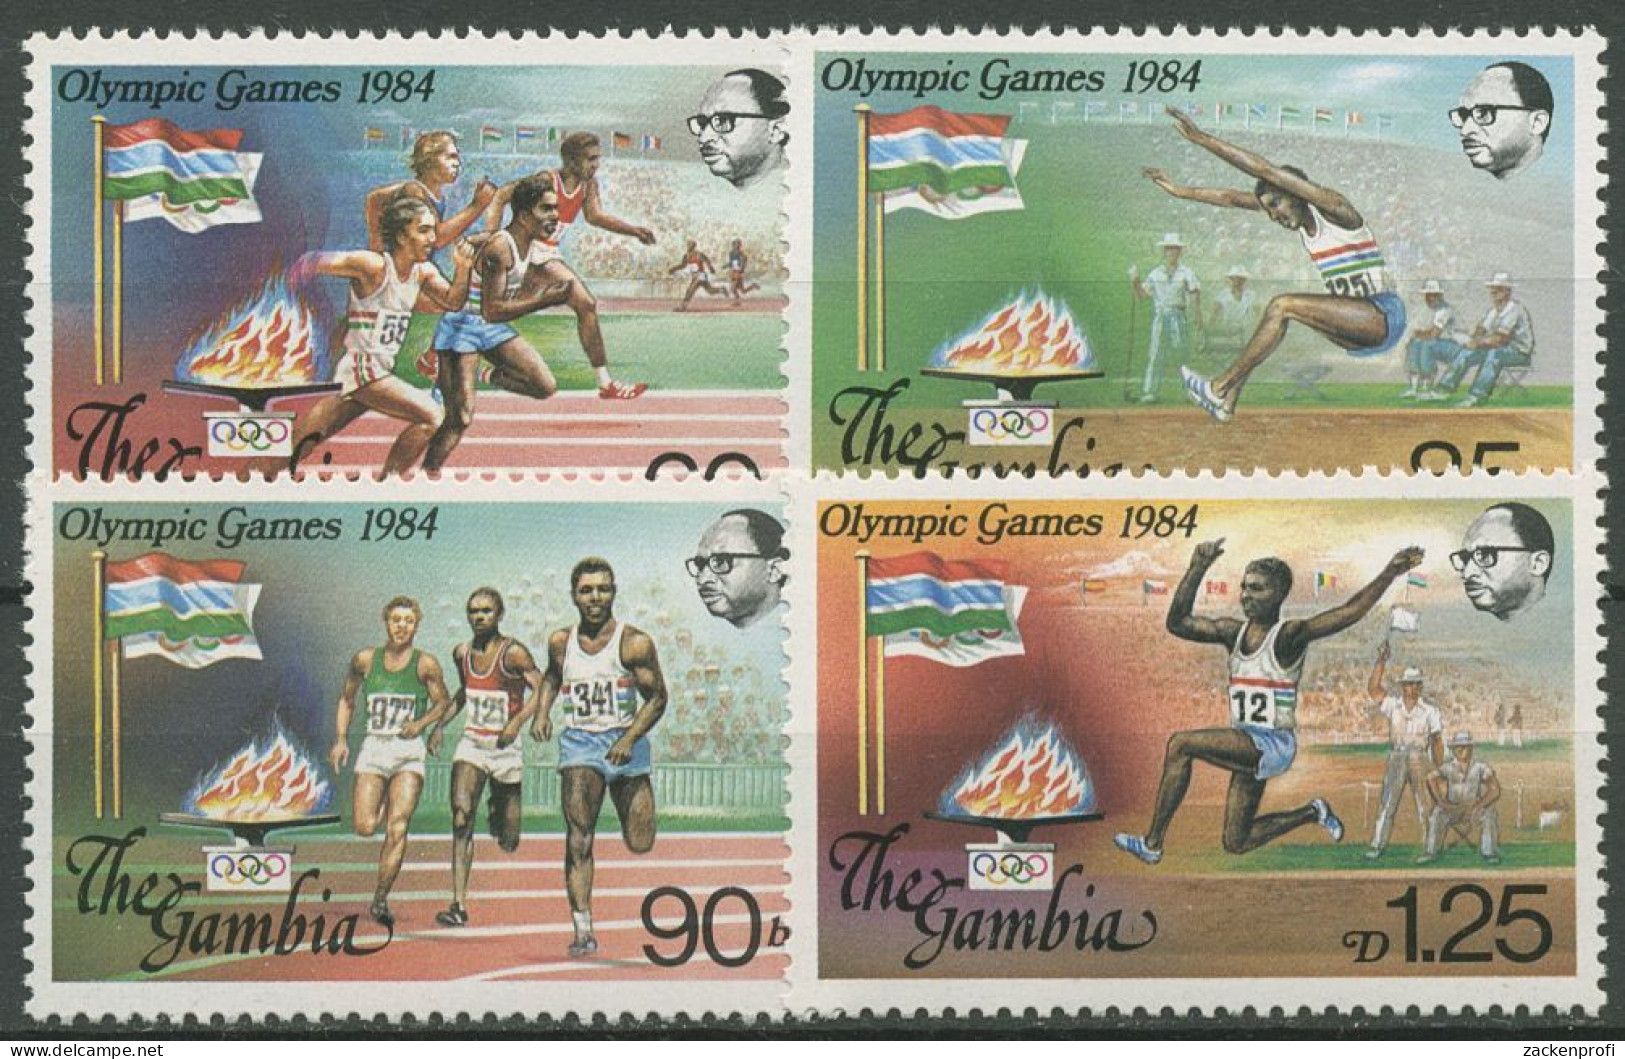 Gambia 1984 Olympische Sommerspiele In Los Angeles 531/34 Postfrisch - Gambie (1965-...)